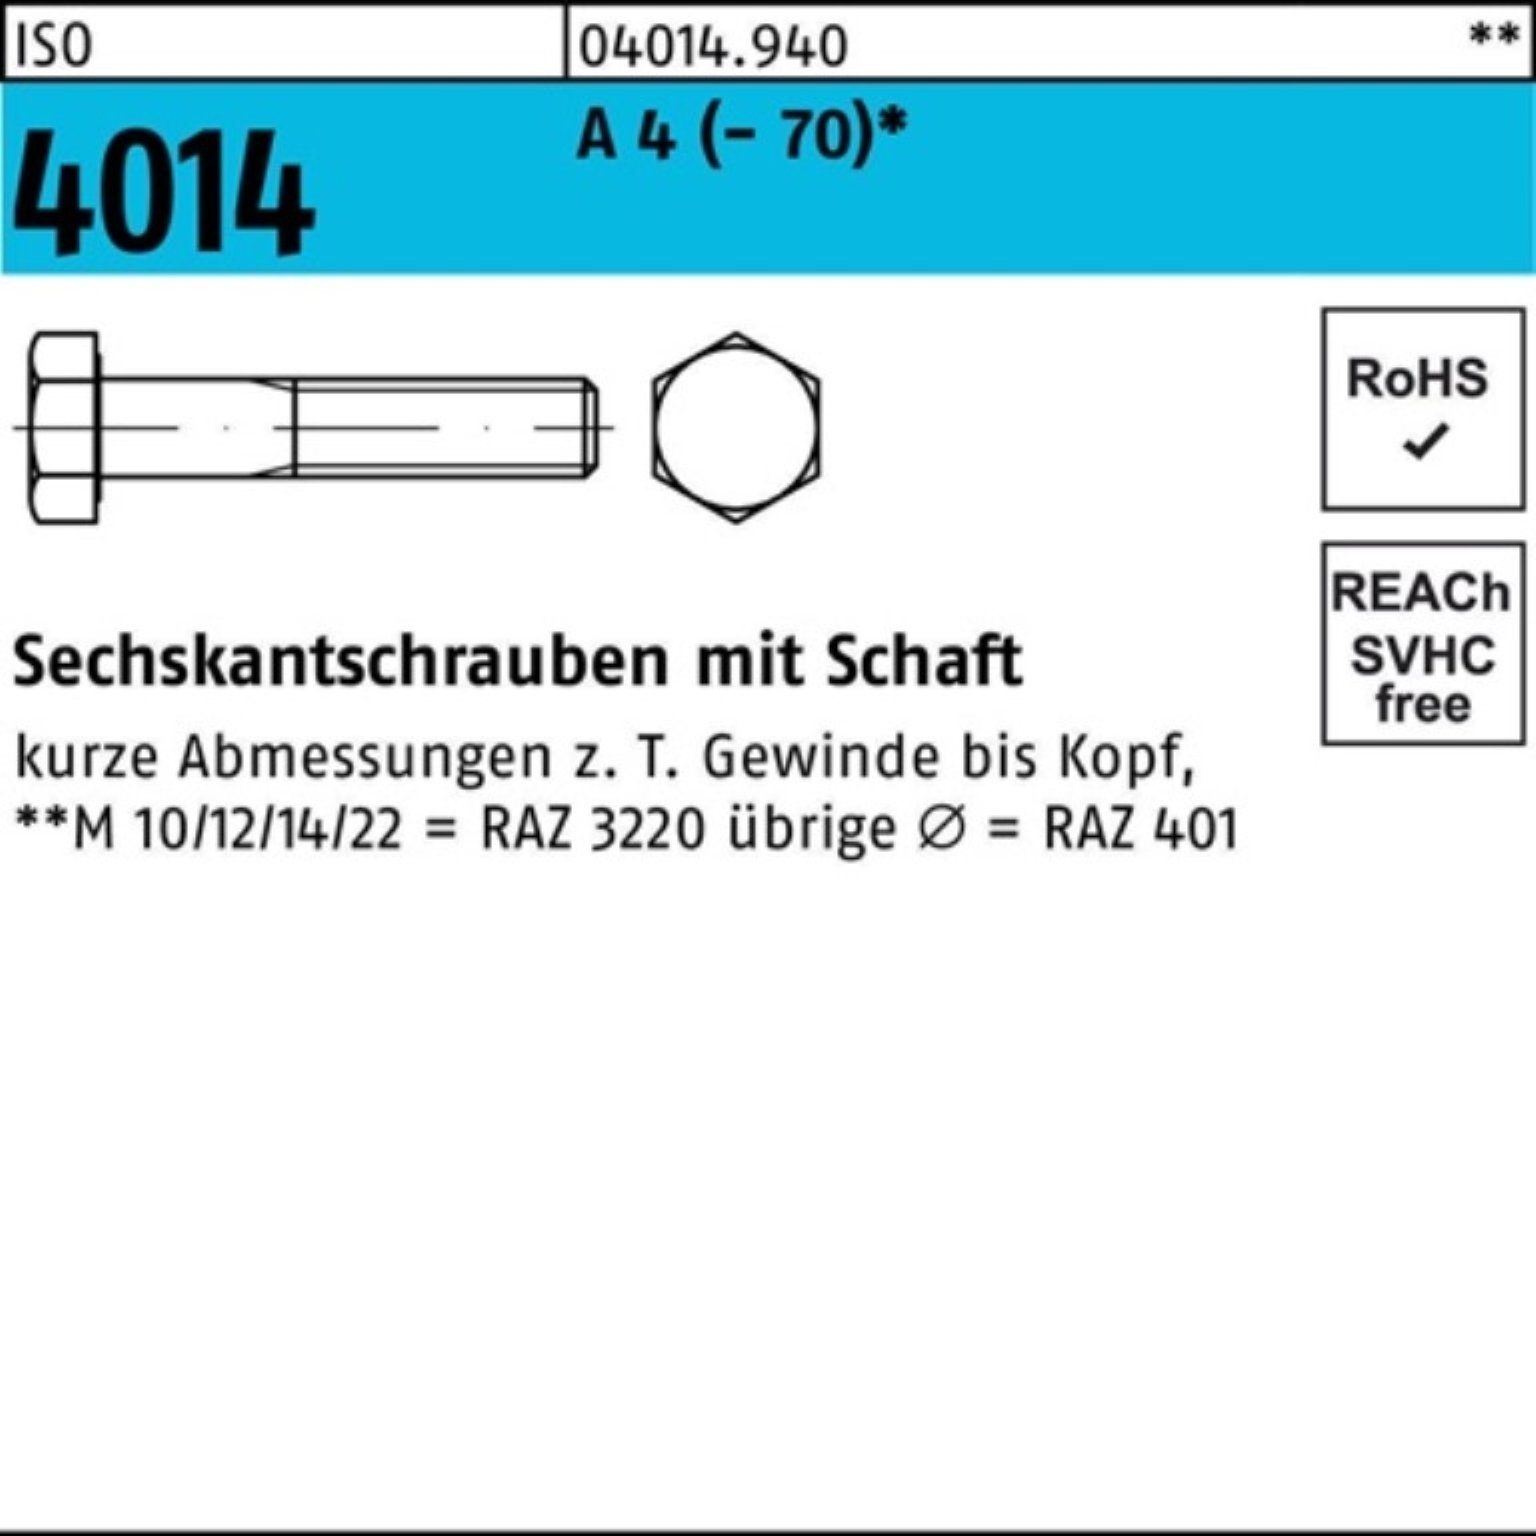 Bufab Sechskantschraube Schaft 150 ISO Sechskantschraube Pack (70) 100er 4014 1 M27x A St 4